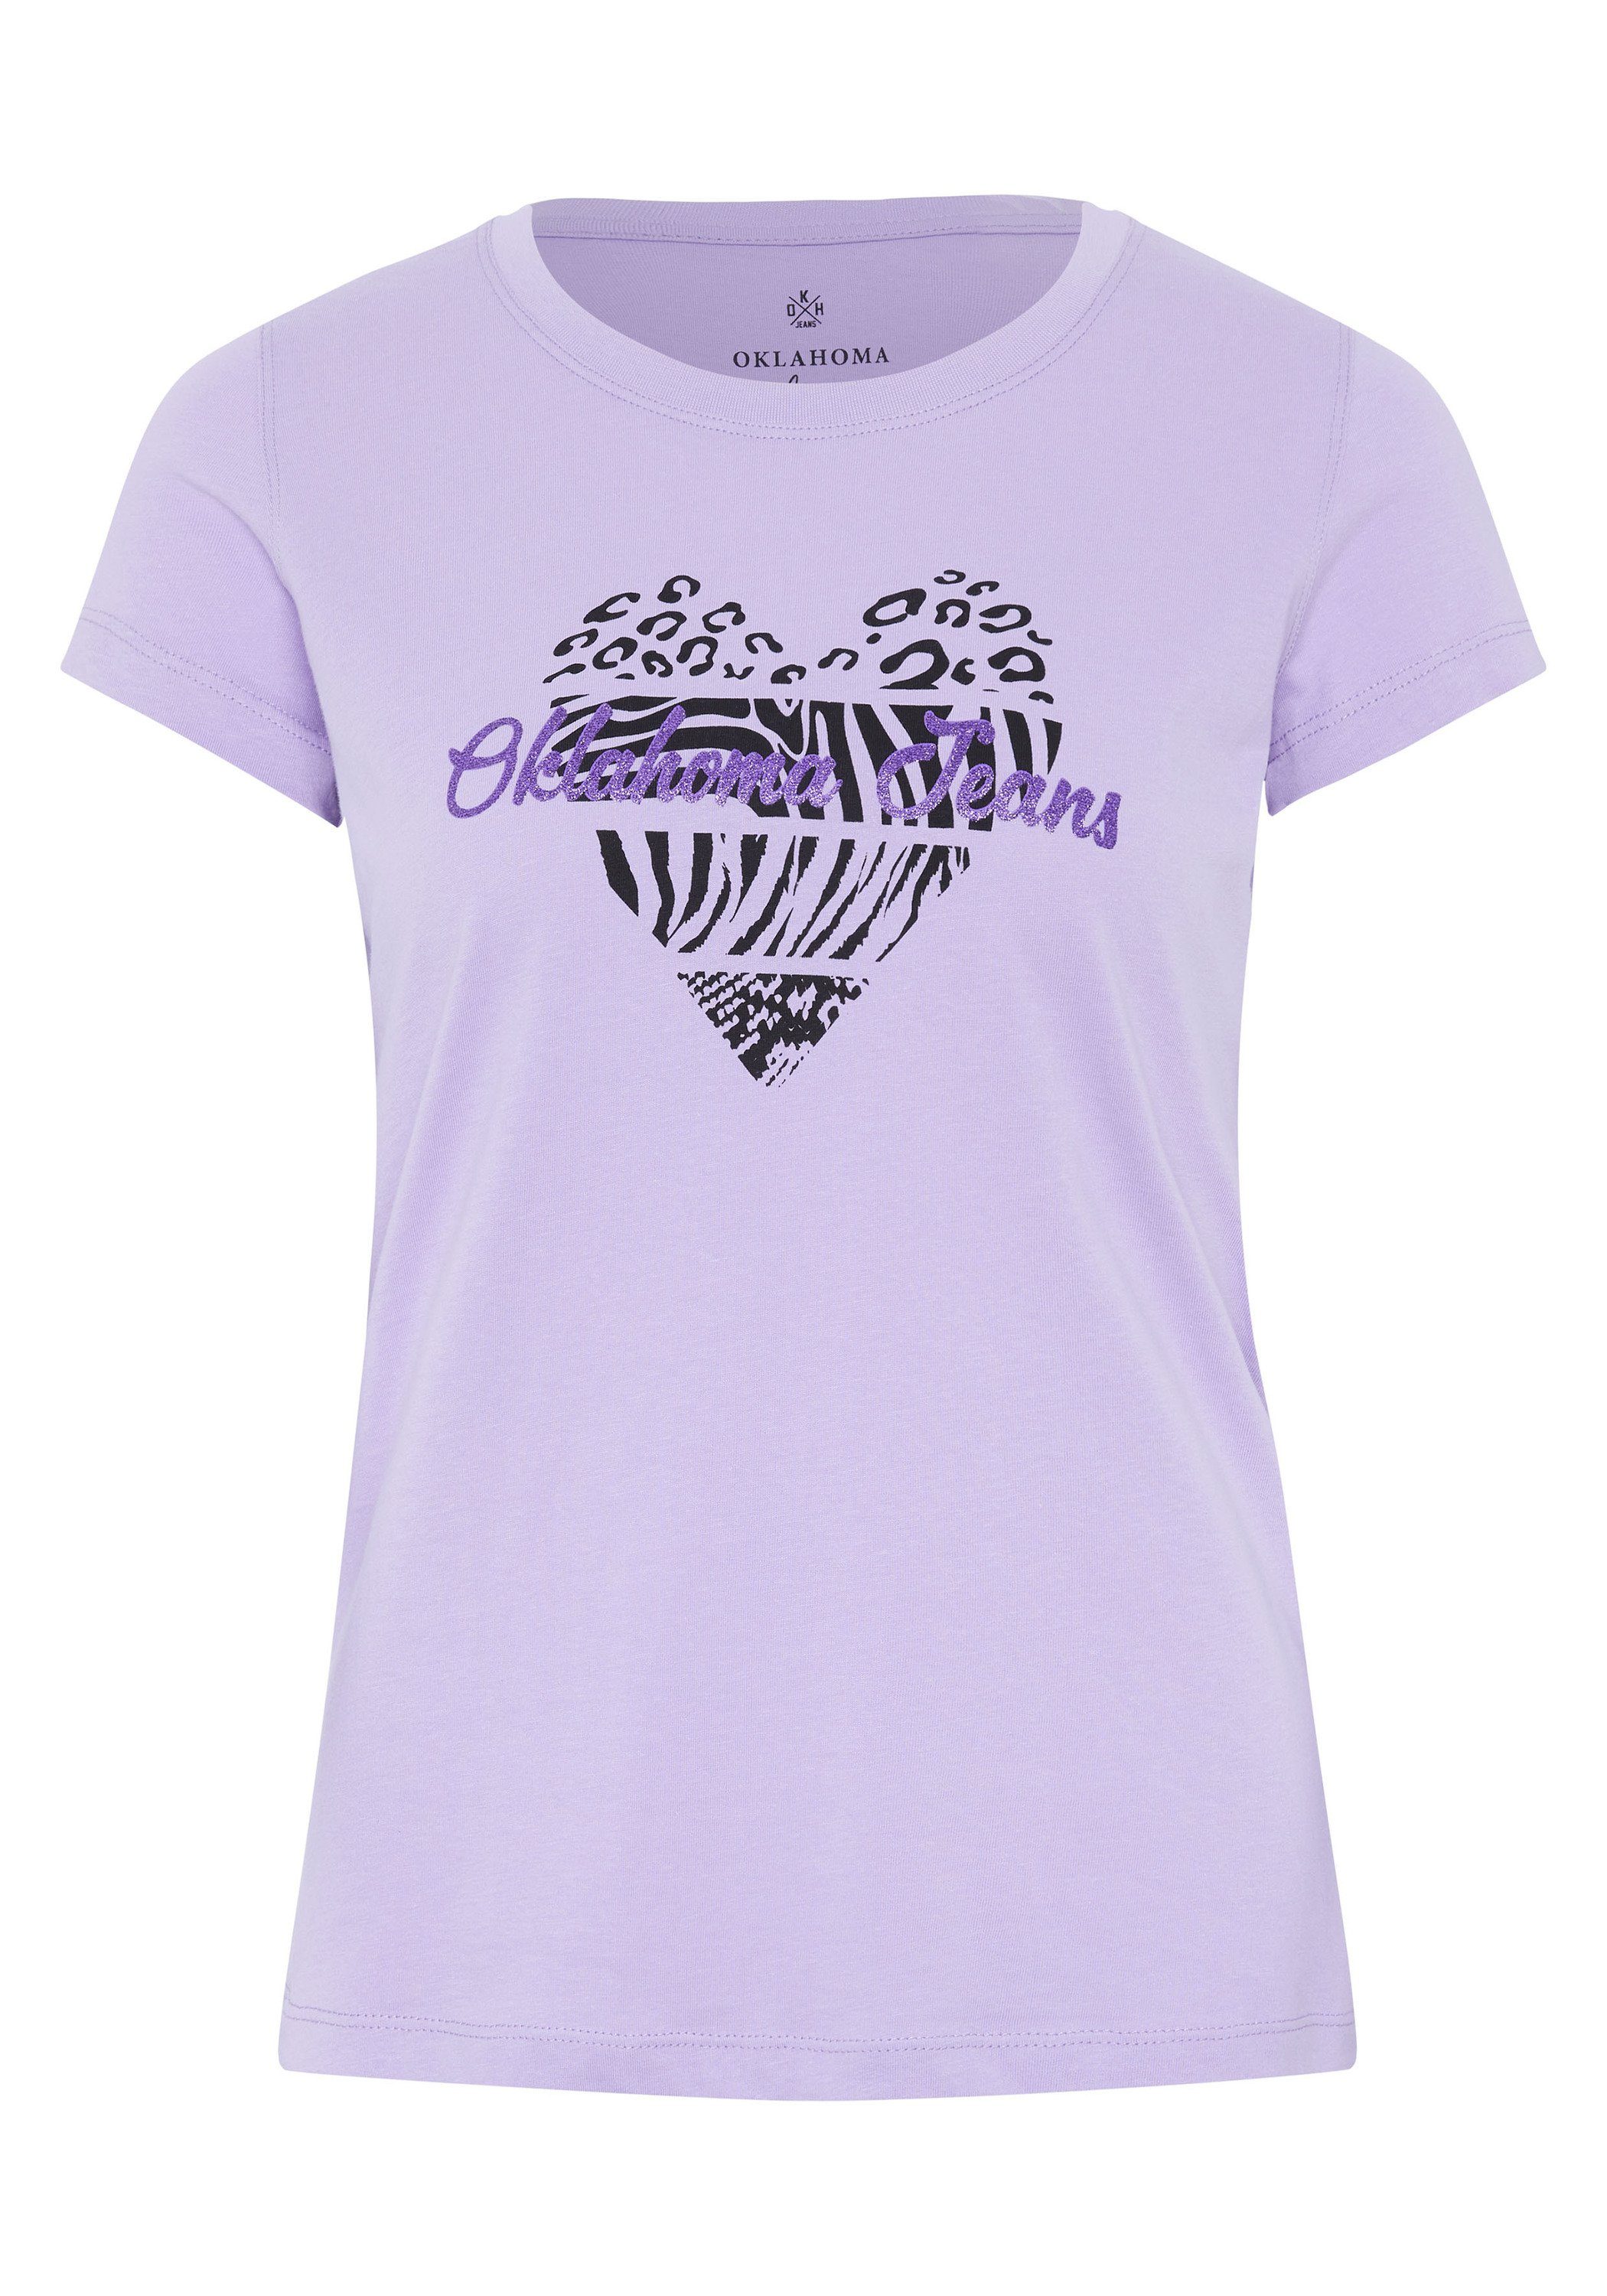 Jeans 15-3716 Oklahoma Logo-Schriftzug mit Print-Shirt Herz-Motiv Purple und Rose